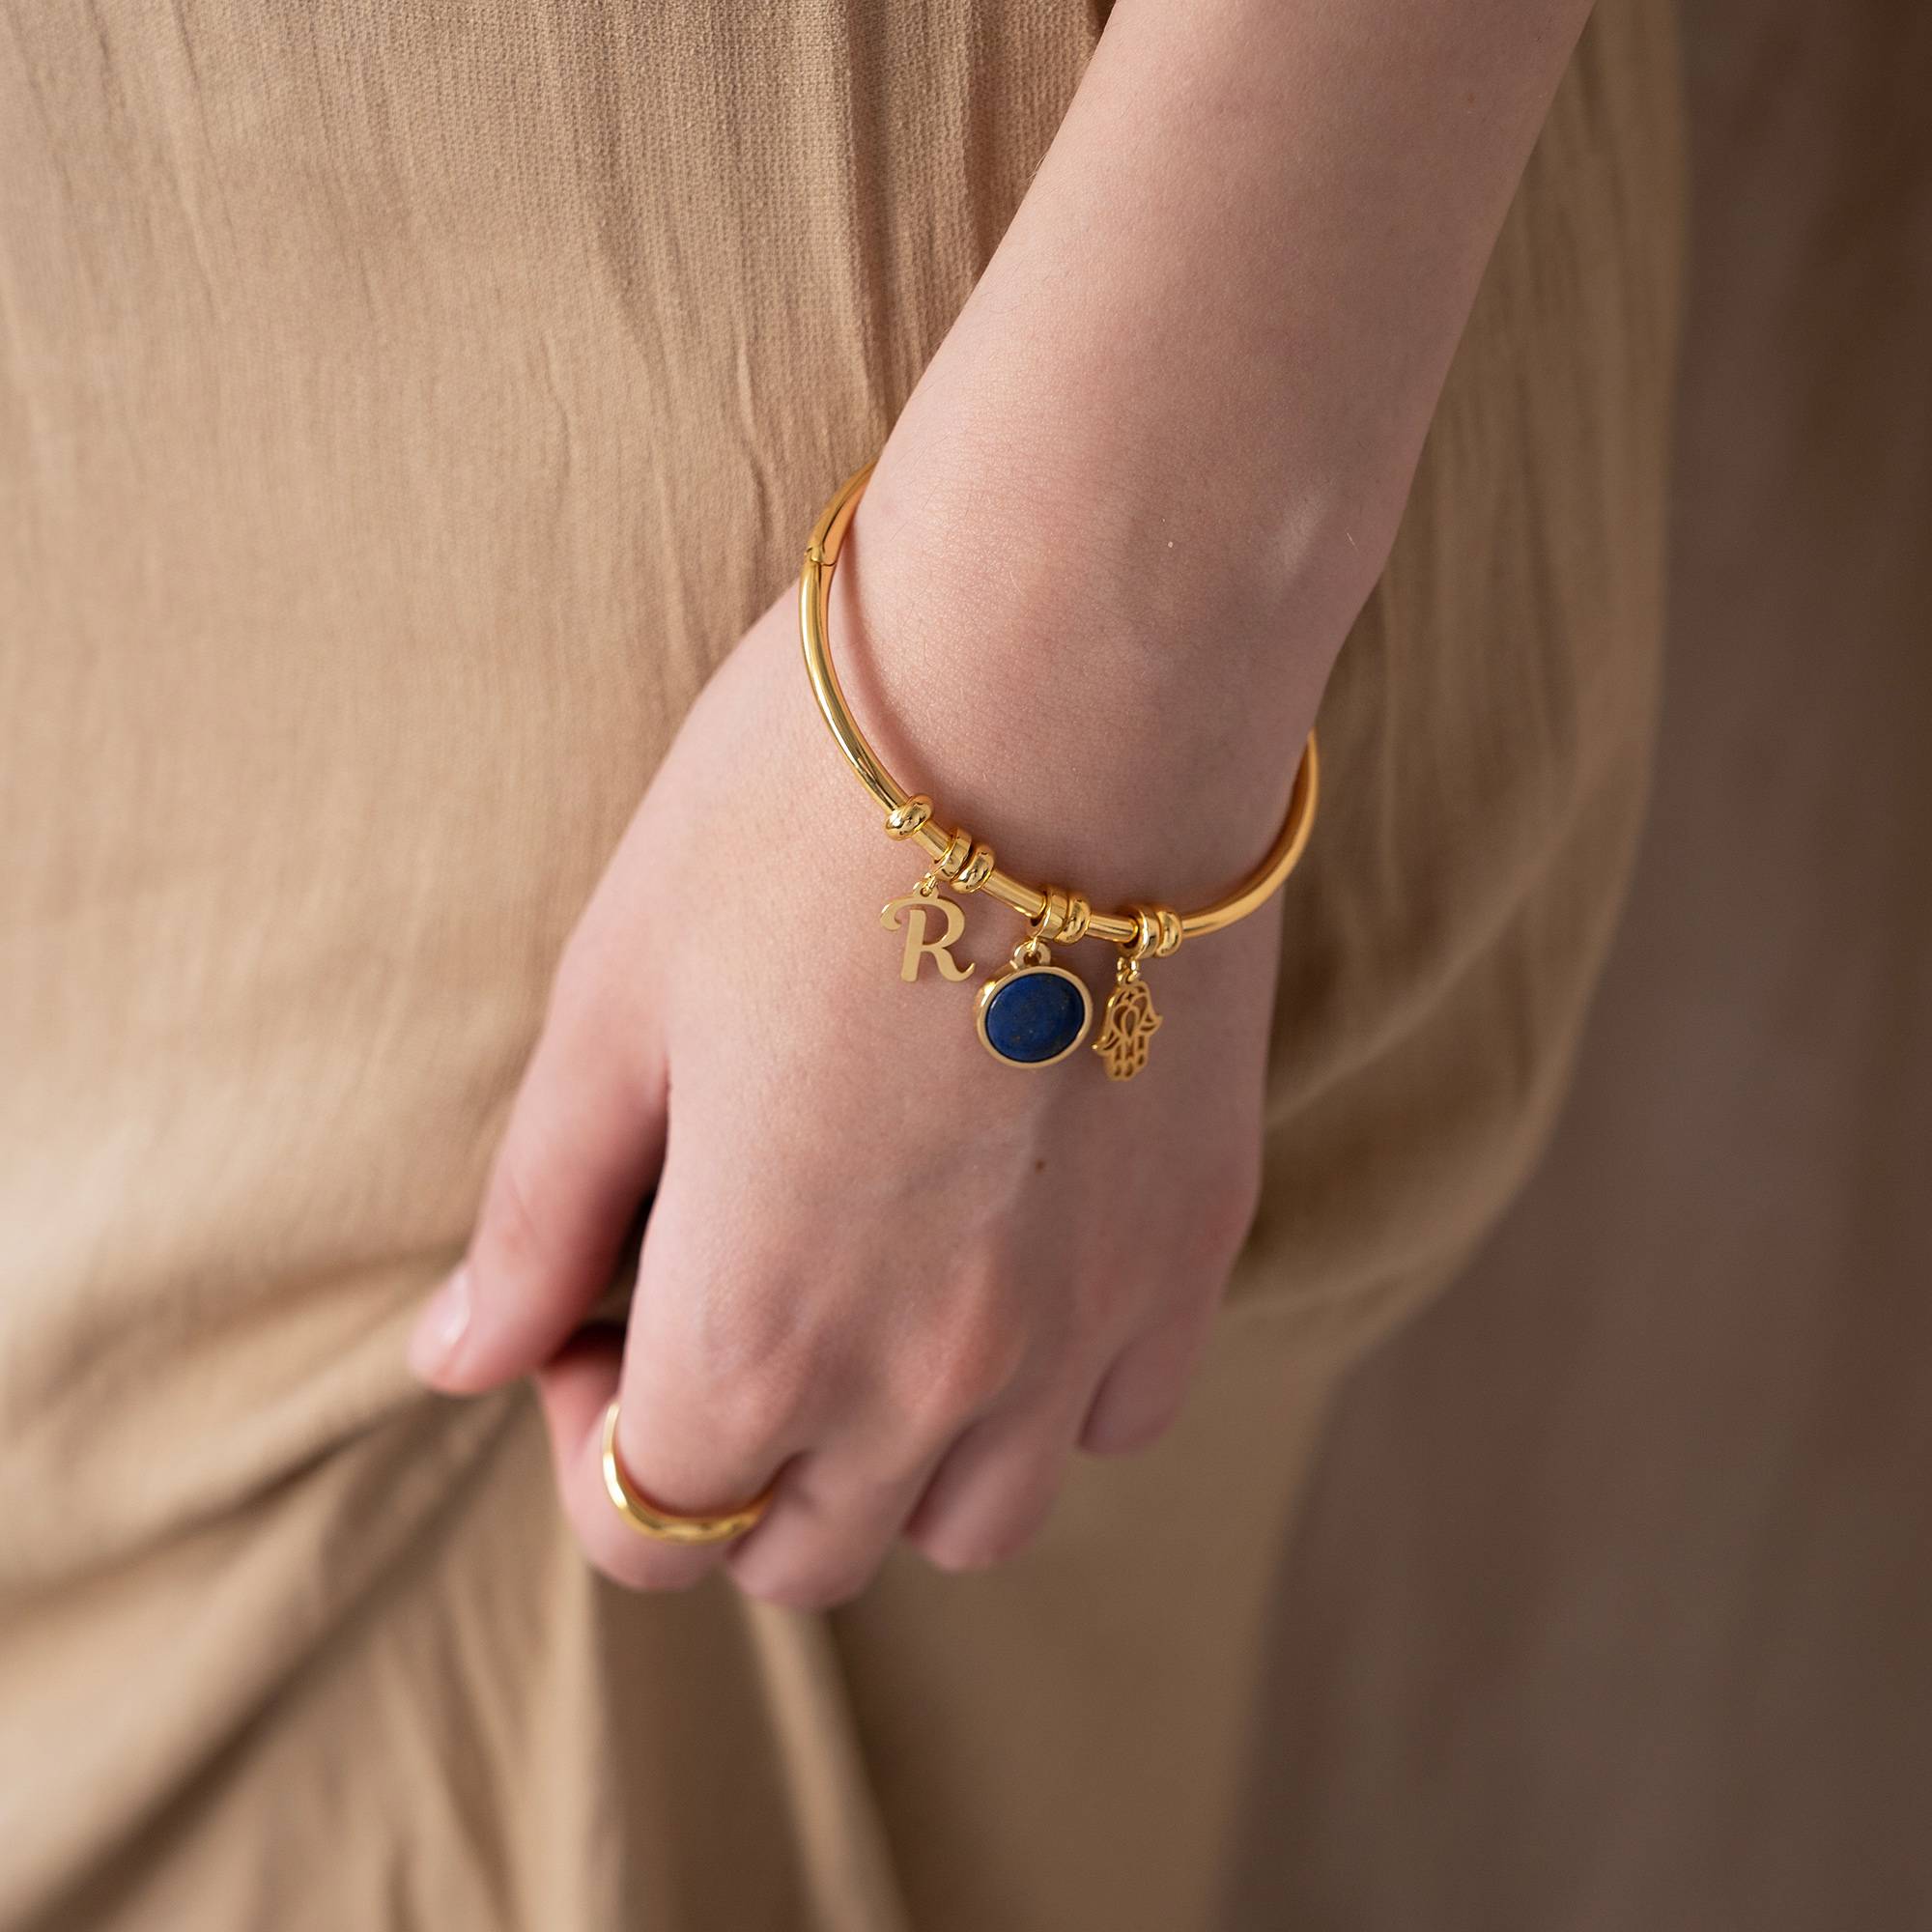 18k Goud Vergulde Symbolische Initiaal Bangle Armband met Halfedelsteen-4 Productfoto